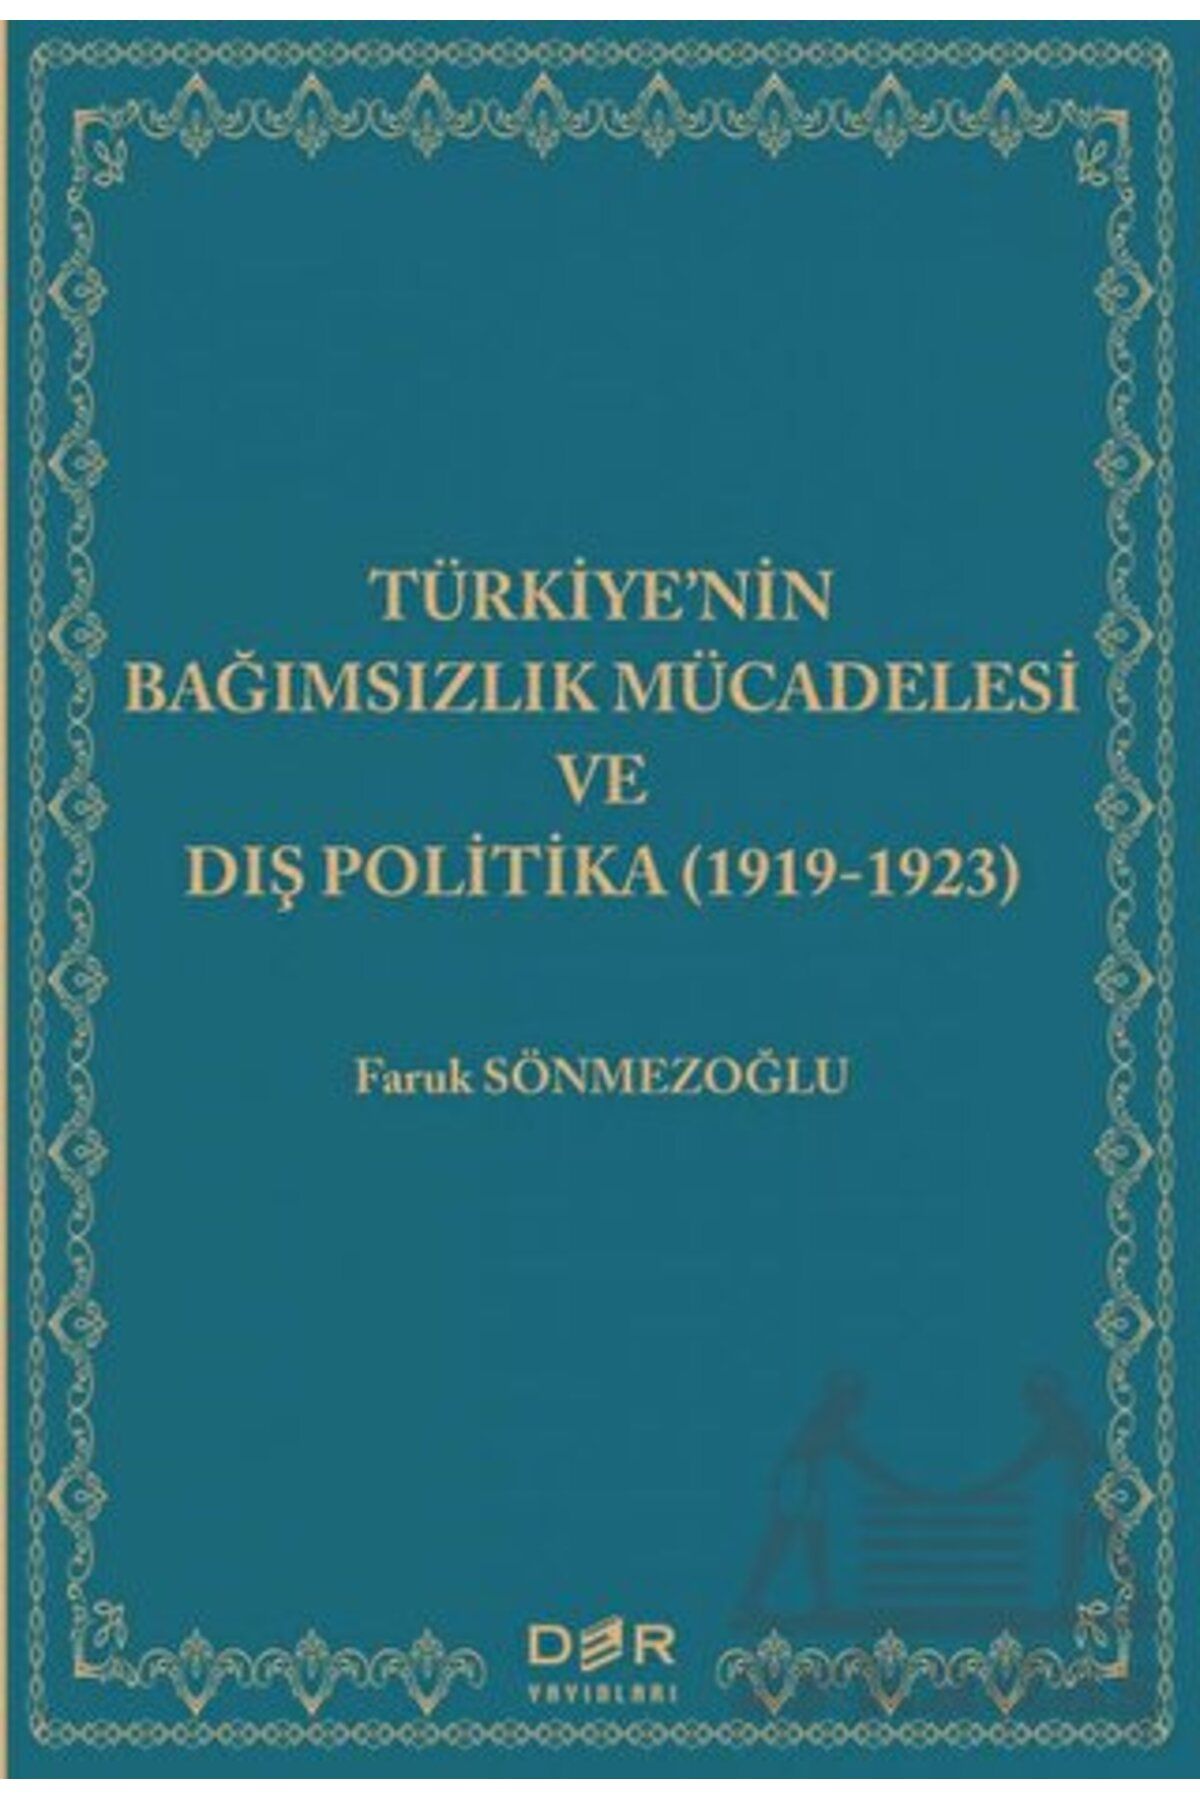 Der Yayınları Türkiye'nin Bağımsızlık Mücadelesi Ve Dış Politika (1919-1923)